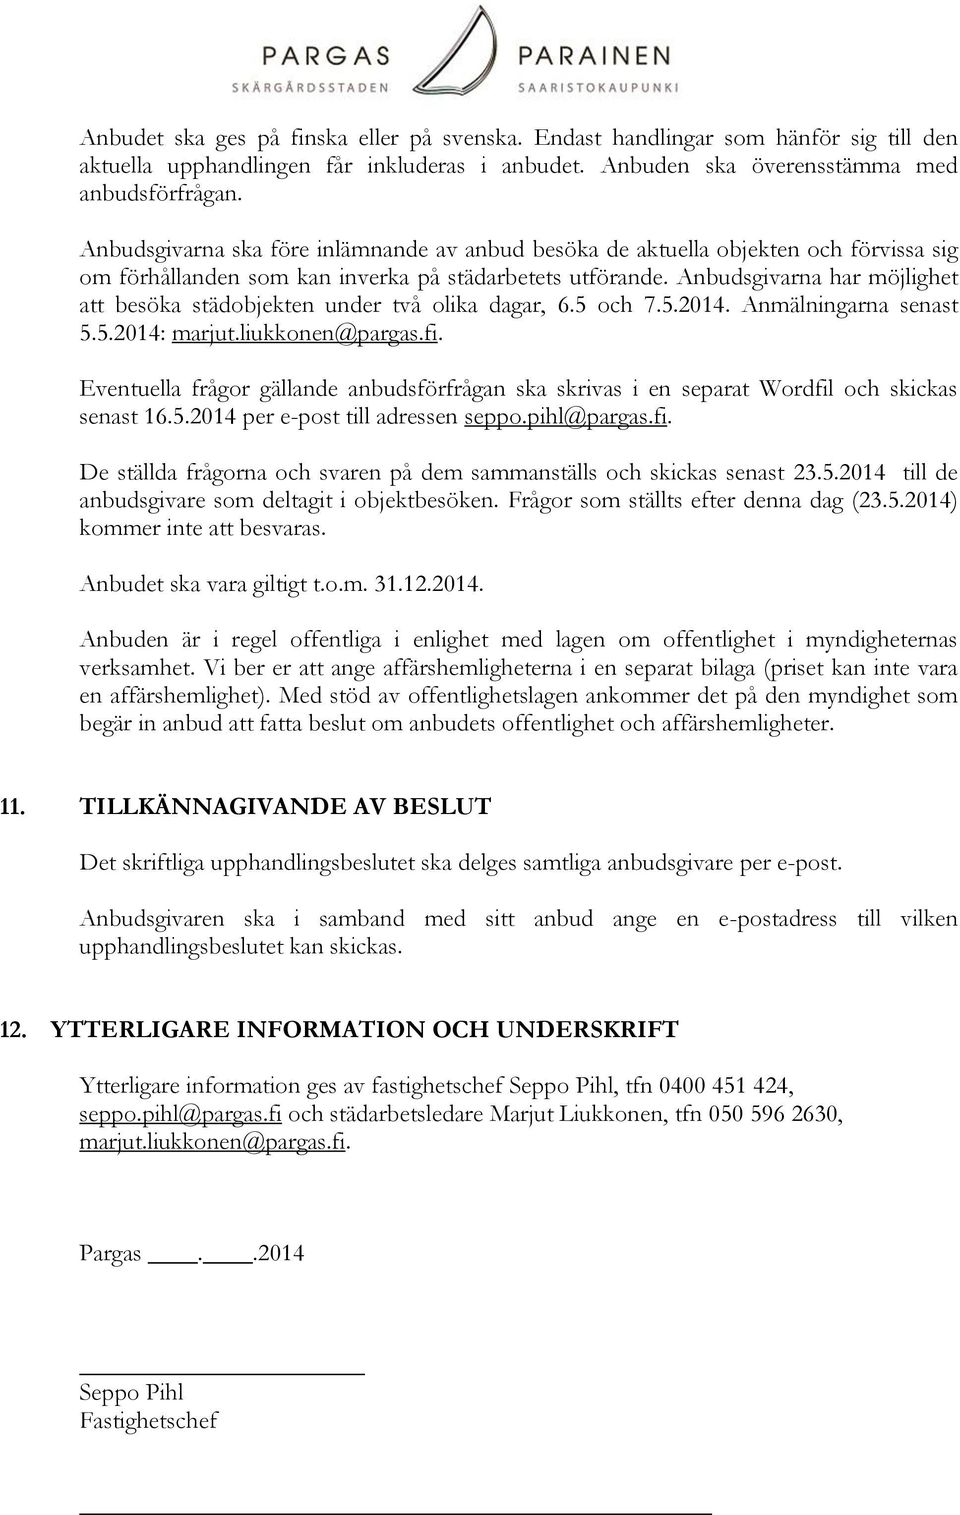 Anbudsgivarna har möjlighet att besöka städobjekten under två olika dagar, 6.5 och 7.5.2014. Anmälningarna senast 5.5.2014: marjut.liukkonen@pargas.fi.